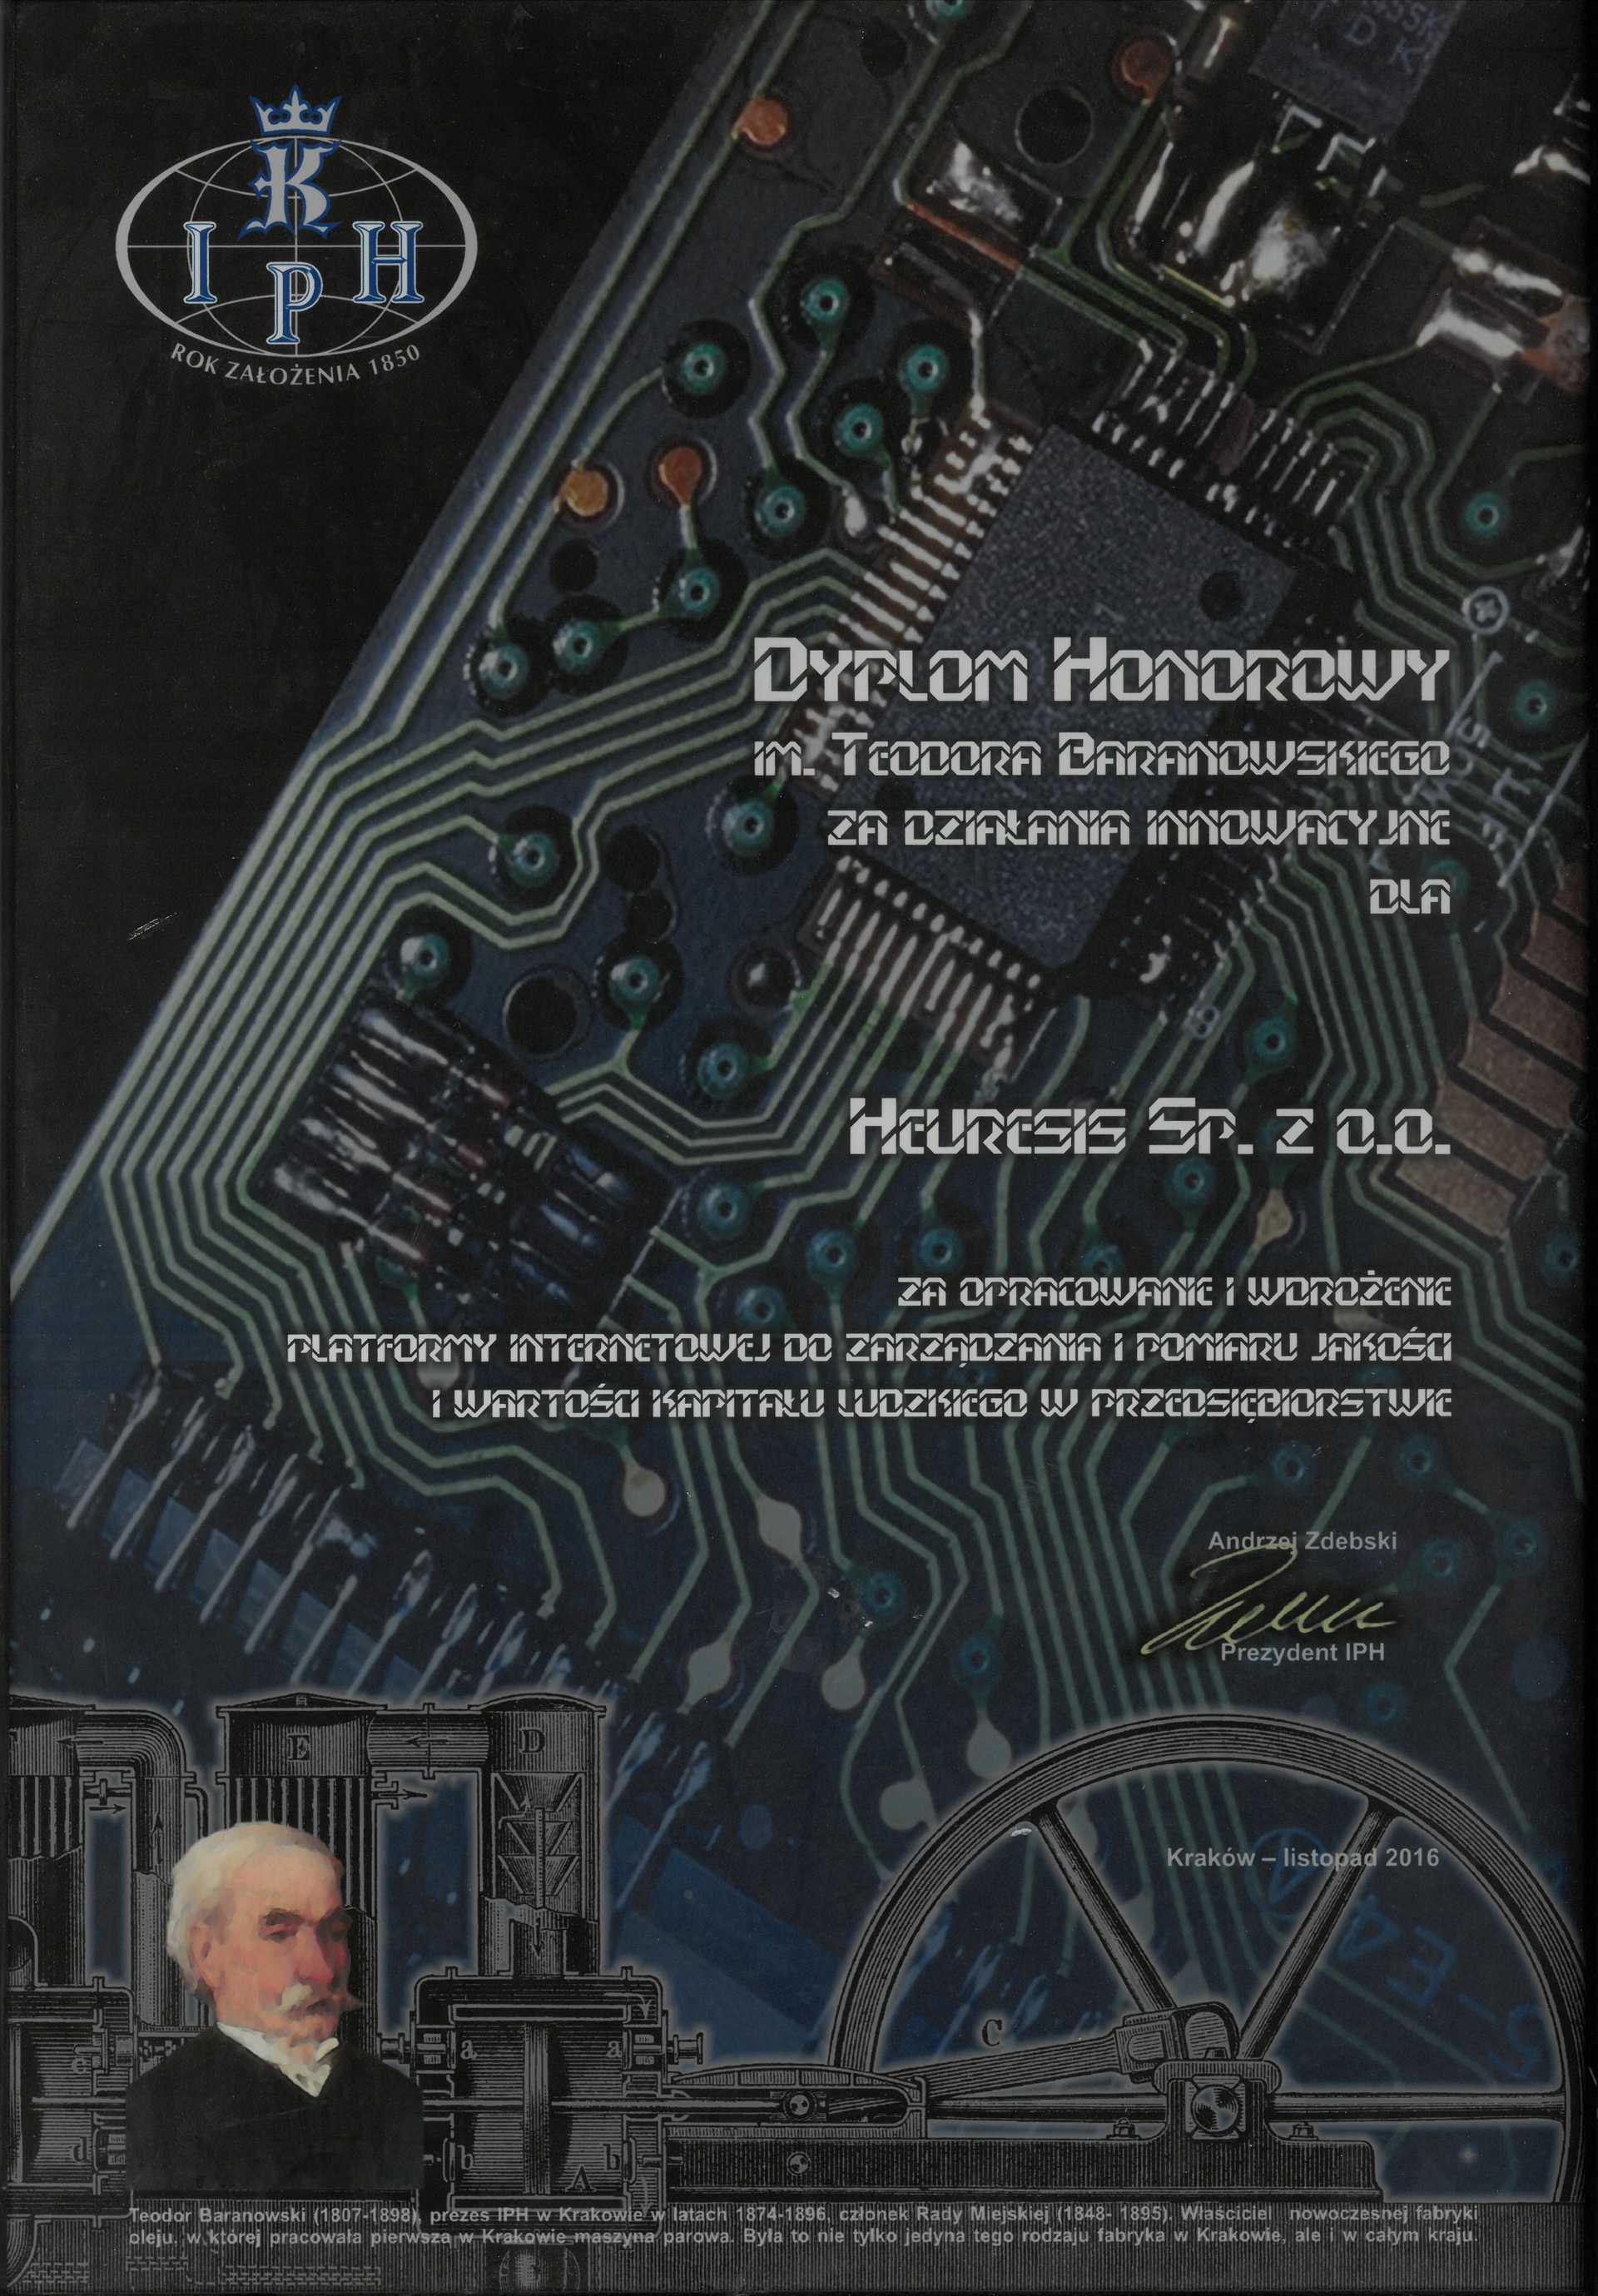 Dyplom honorowy imienia Teodora Baranowskiego za działania innowacyjne dla Heuresis